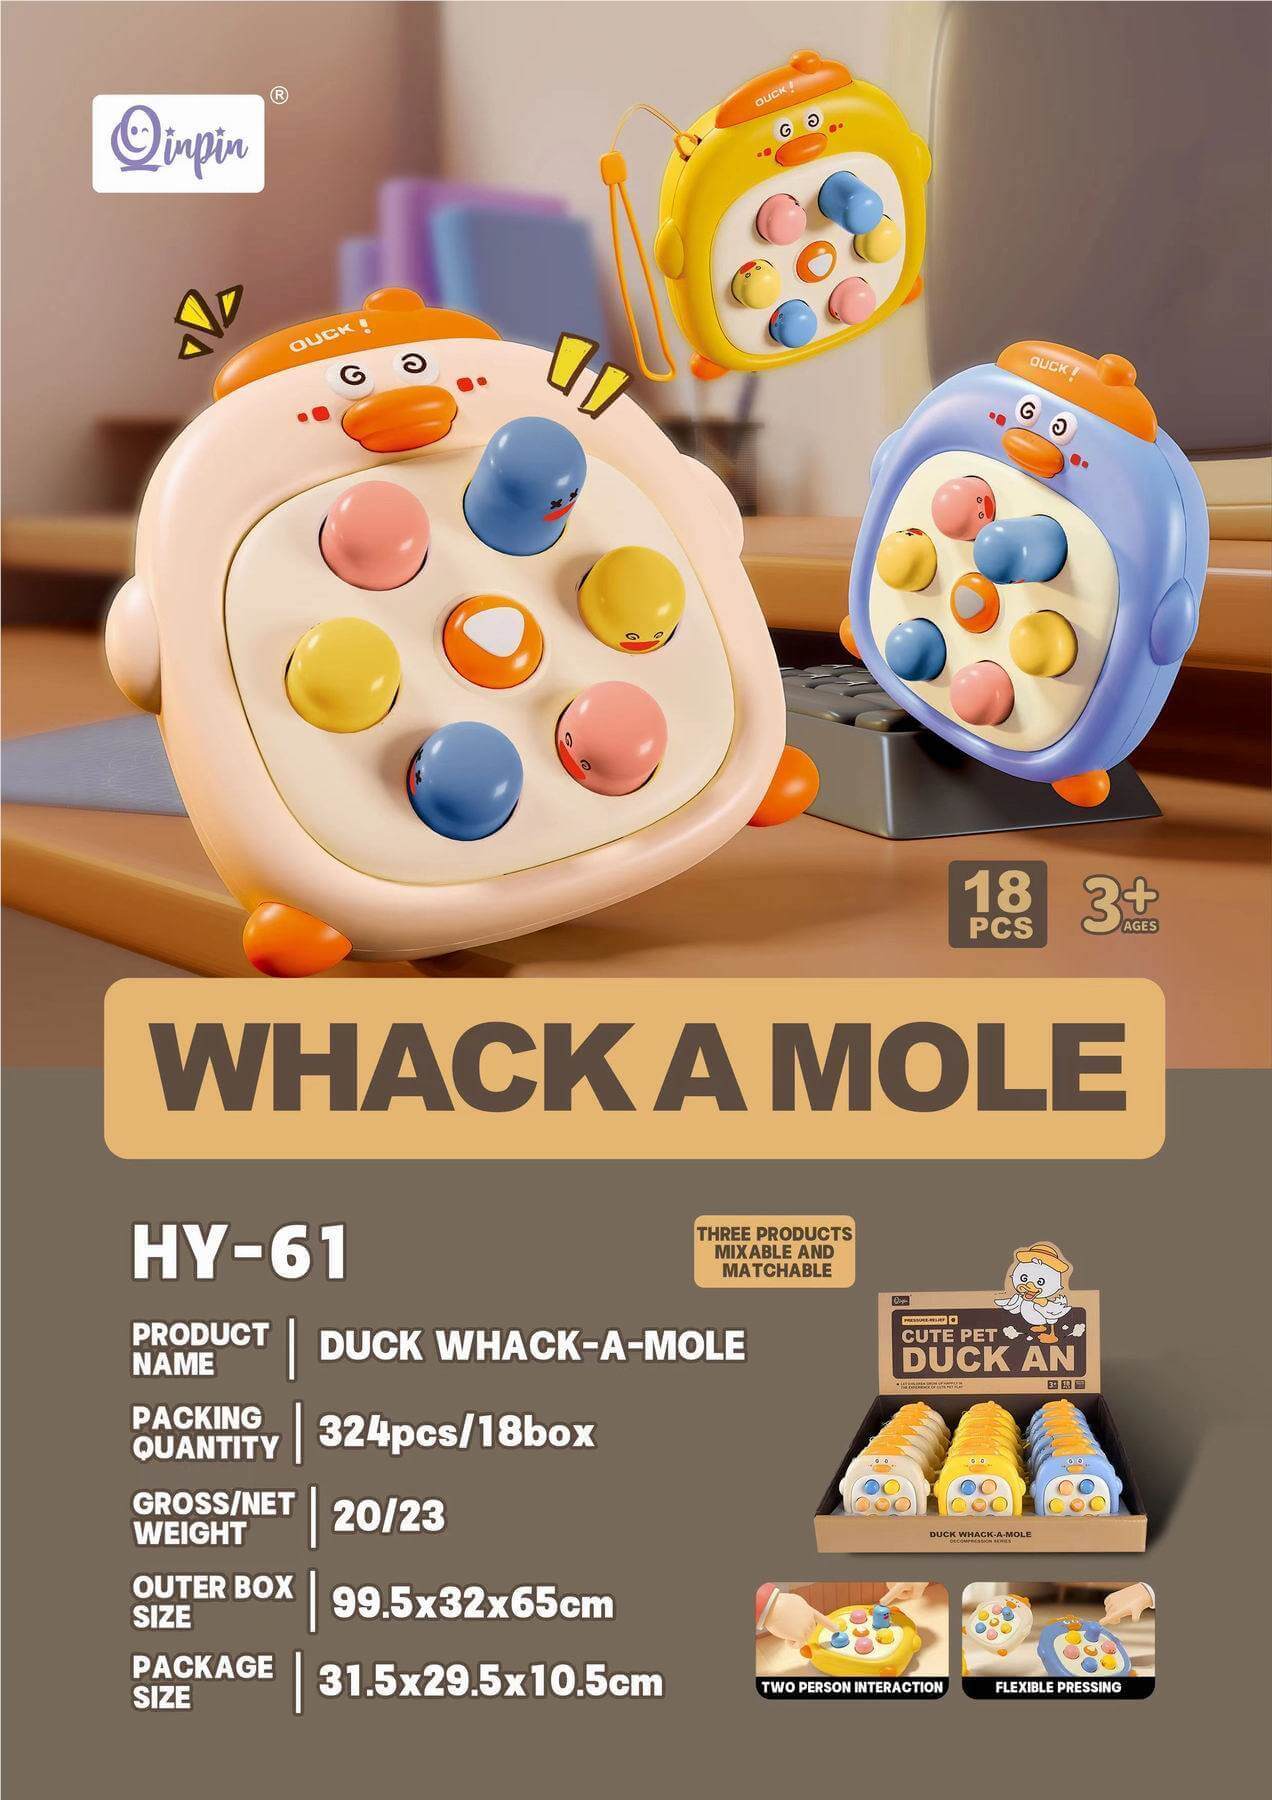 8 whack a mole